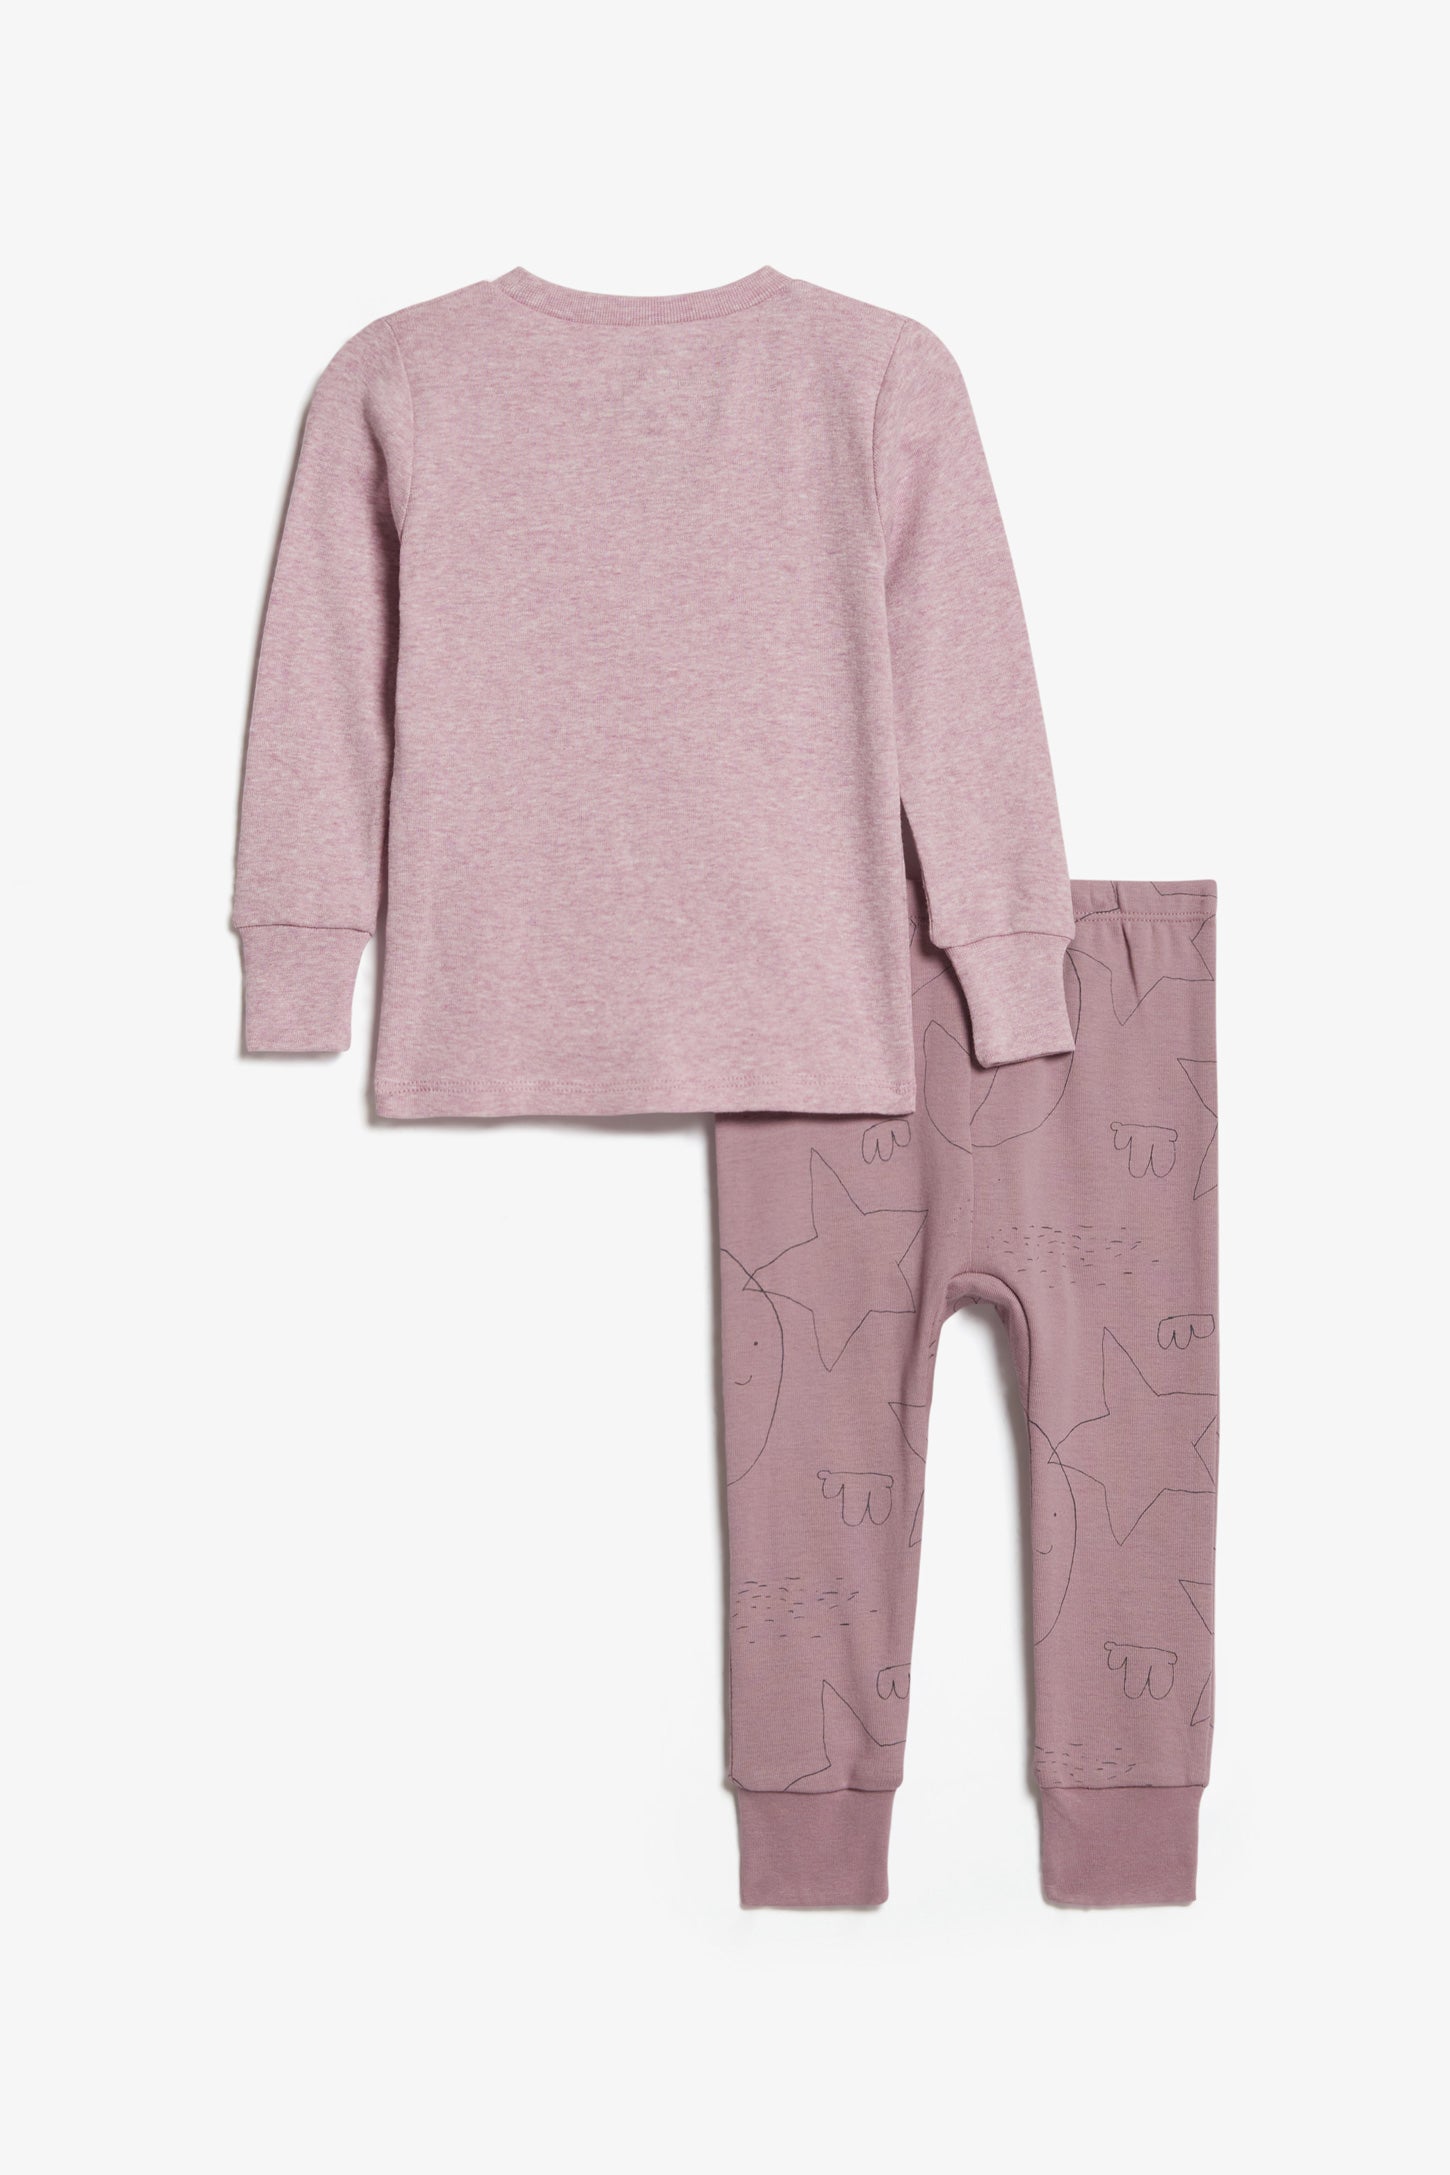 Pyjama 2-pièces en coton bio, 2T-3T - Bébé && ROSE